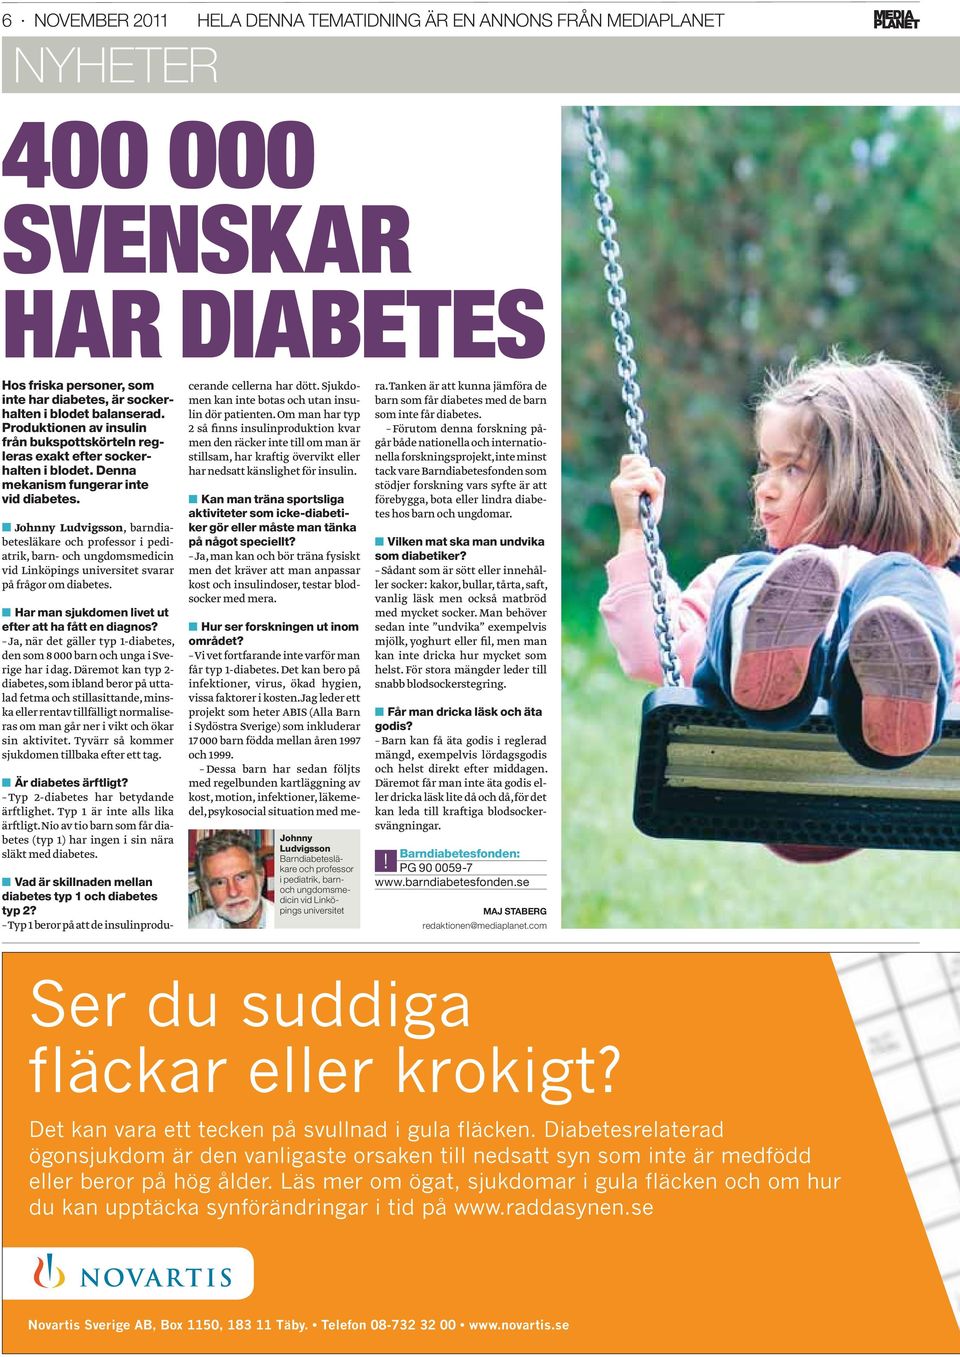 Johnny Ludvigsson, barndiabetesläkare och professor i pediatrik, barn- och ungdomsmedicin vid Linköpings universitet svarar på frågor om diabetes.